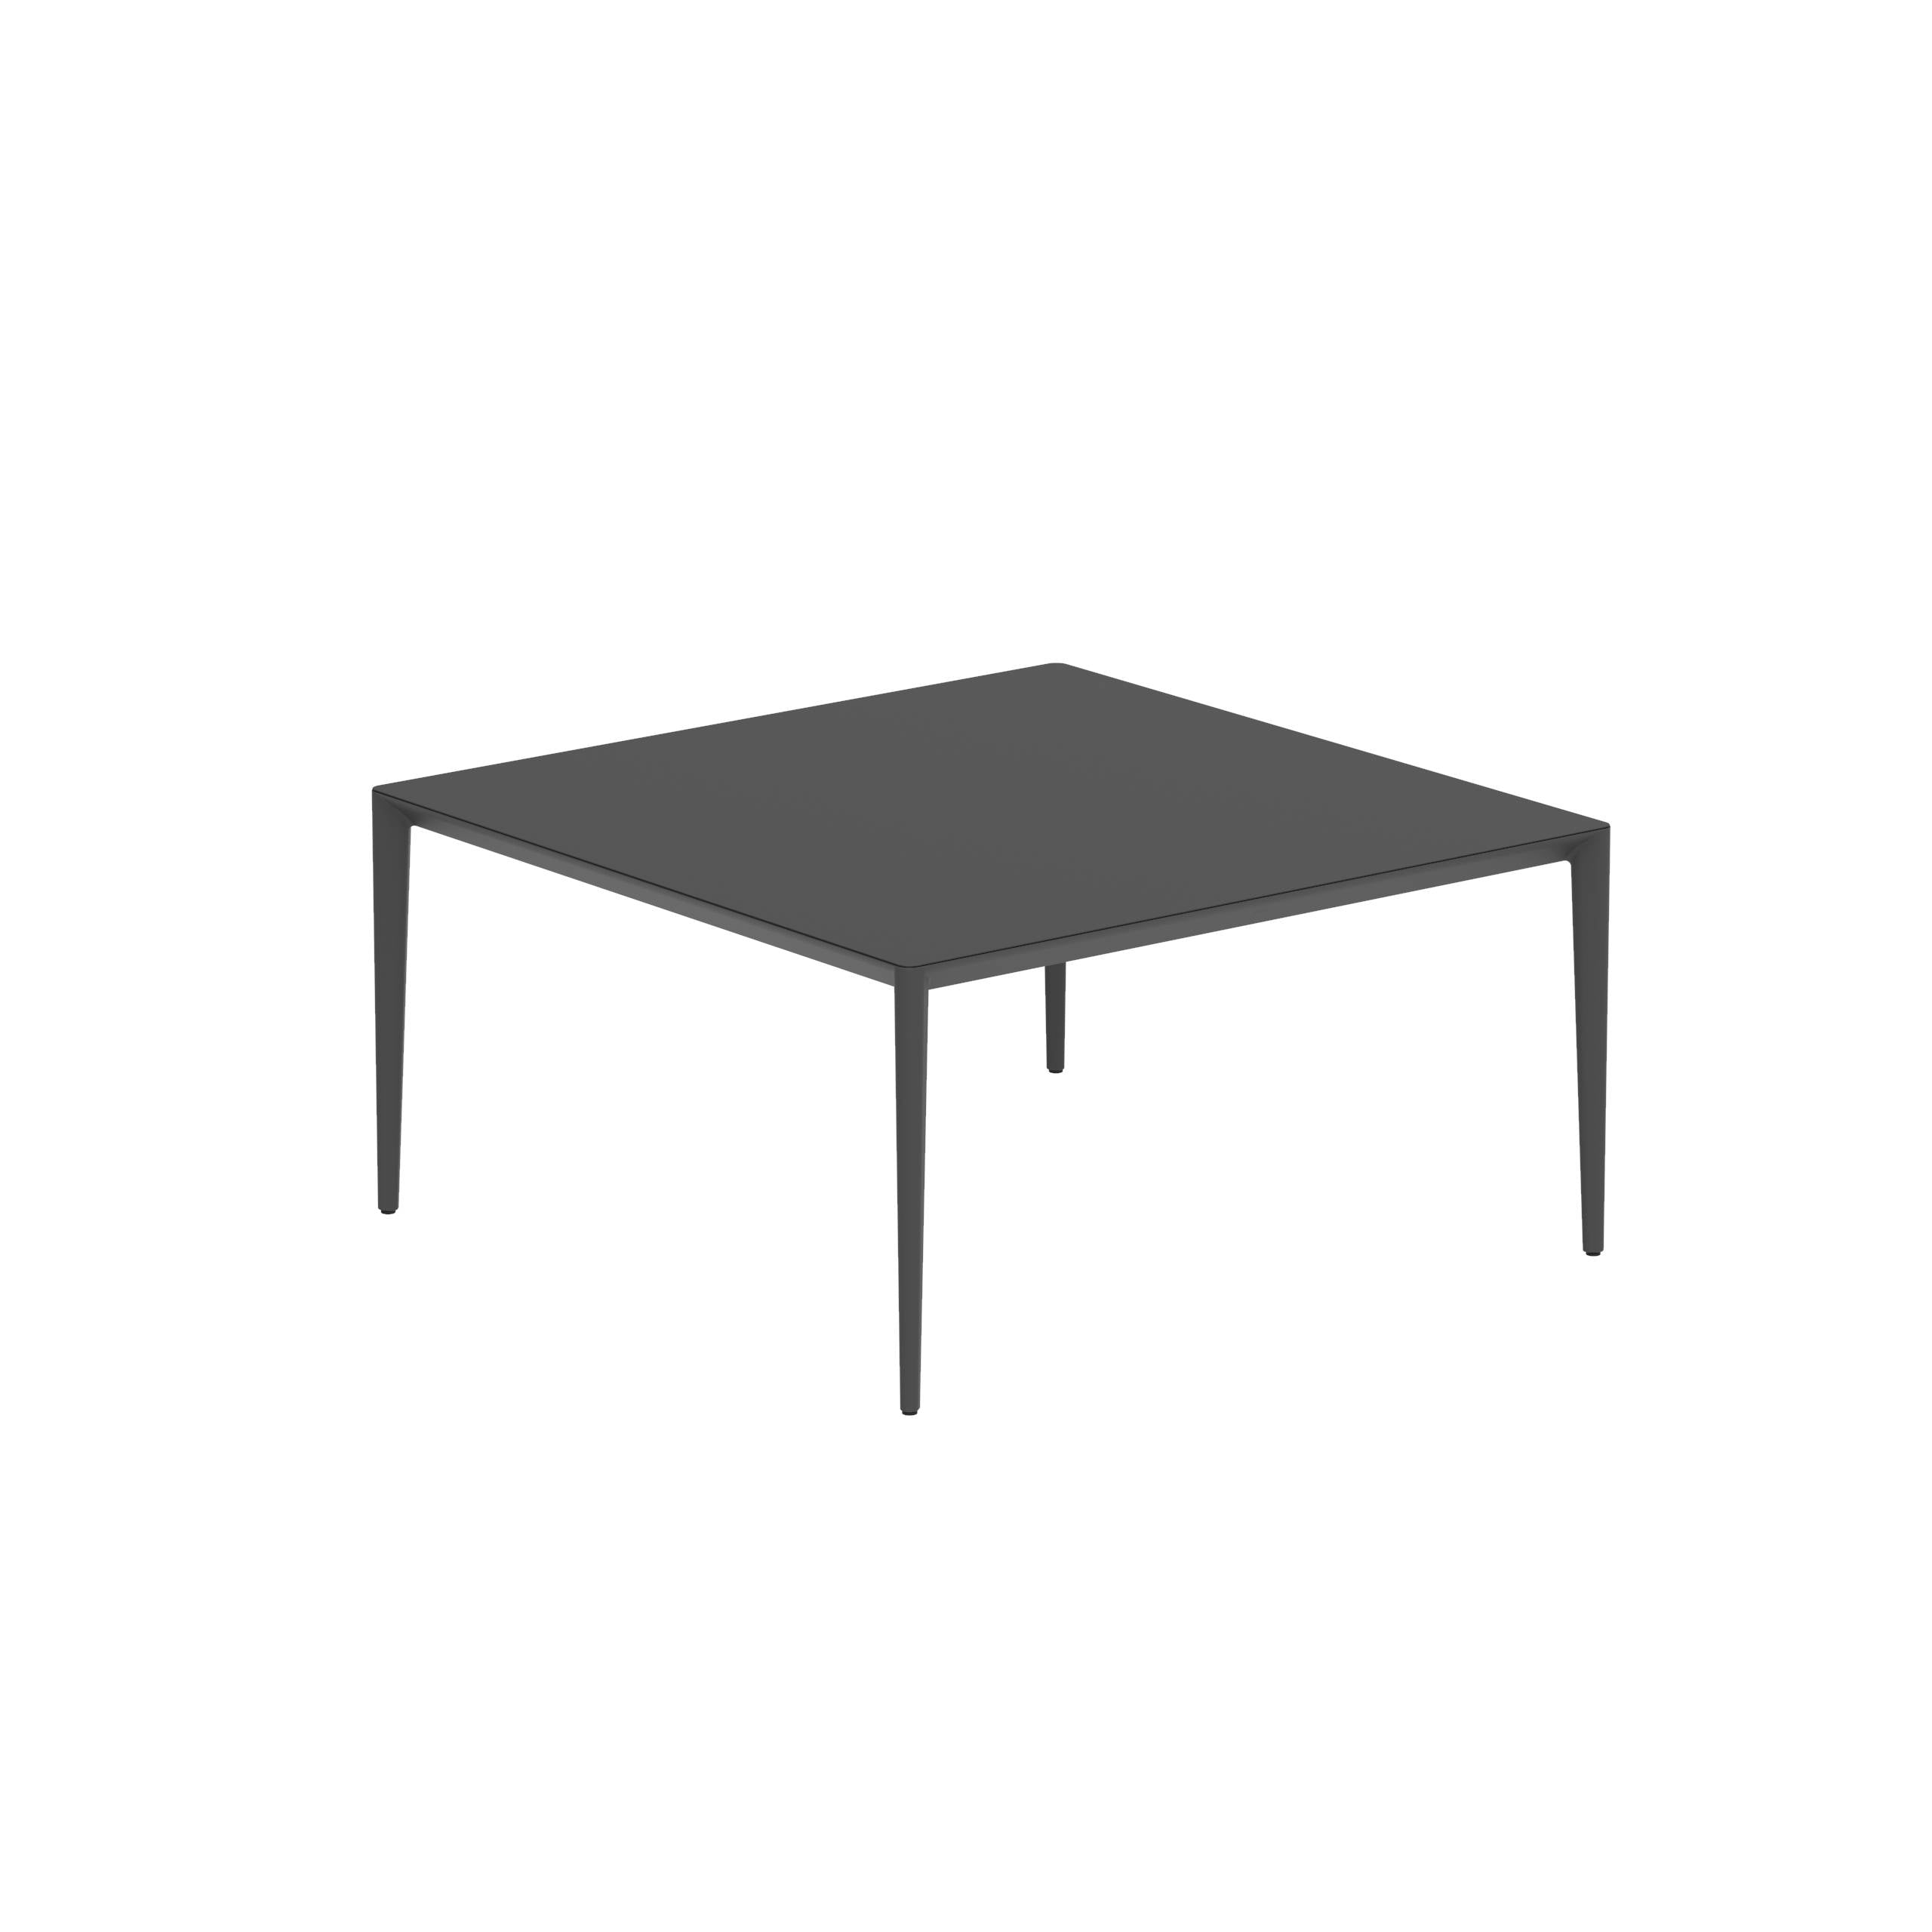 U-Nite Table 150x150cm Anthracite With Ceramic Tabletop In Black